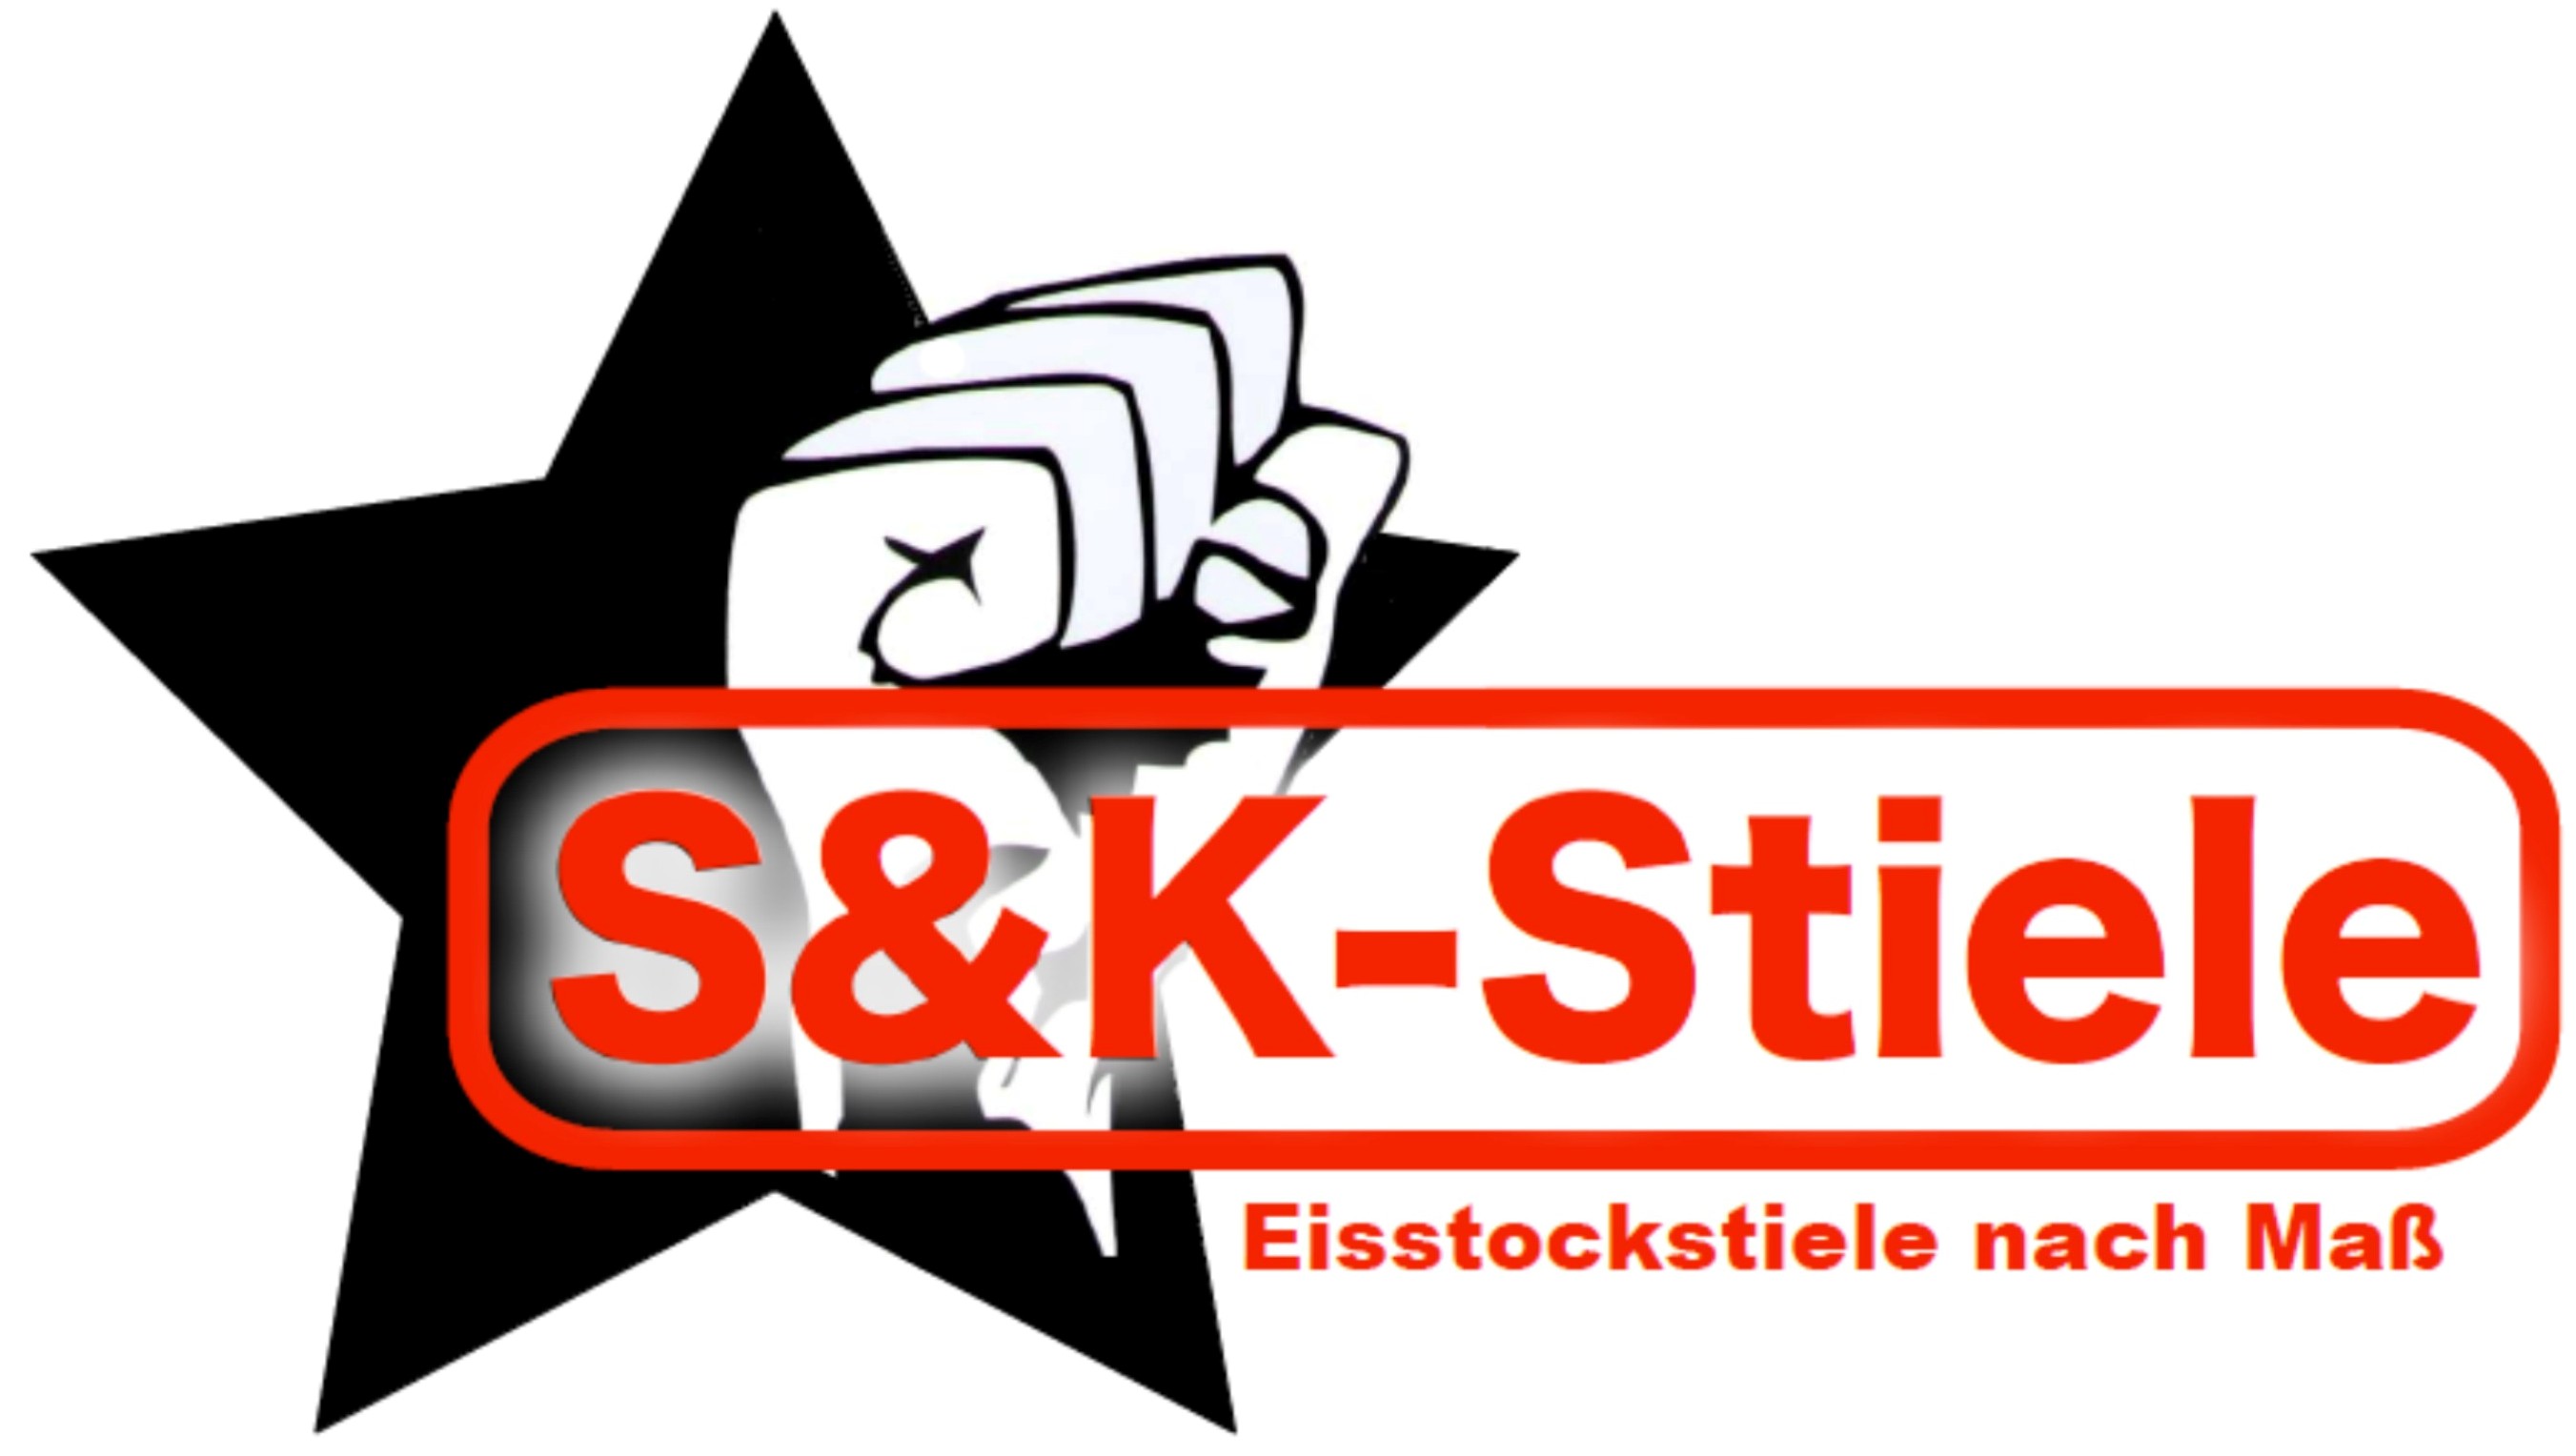 S & K Stiele